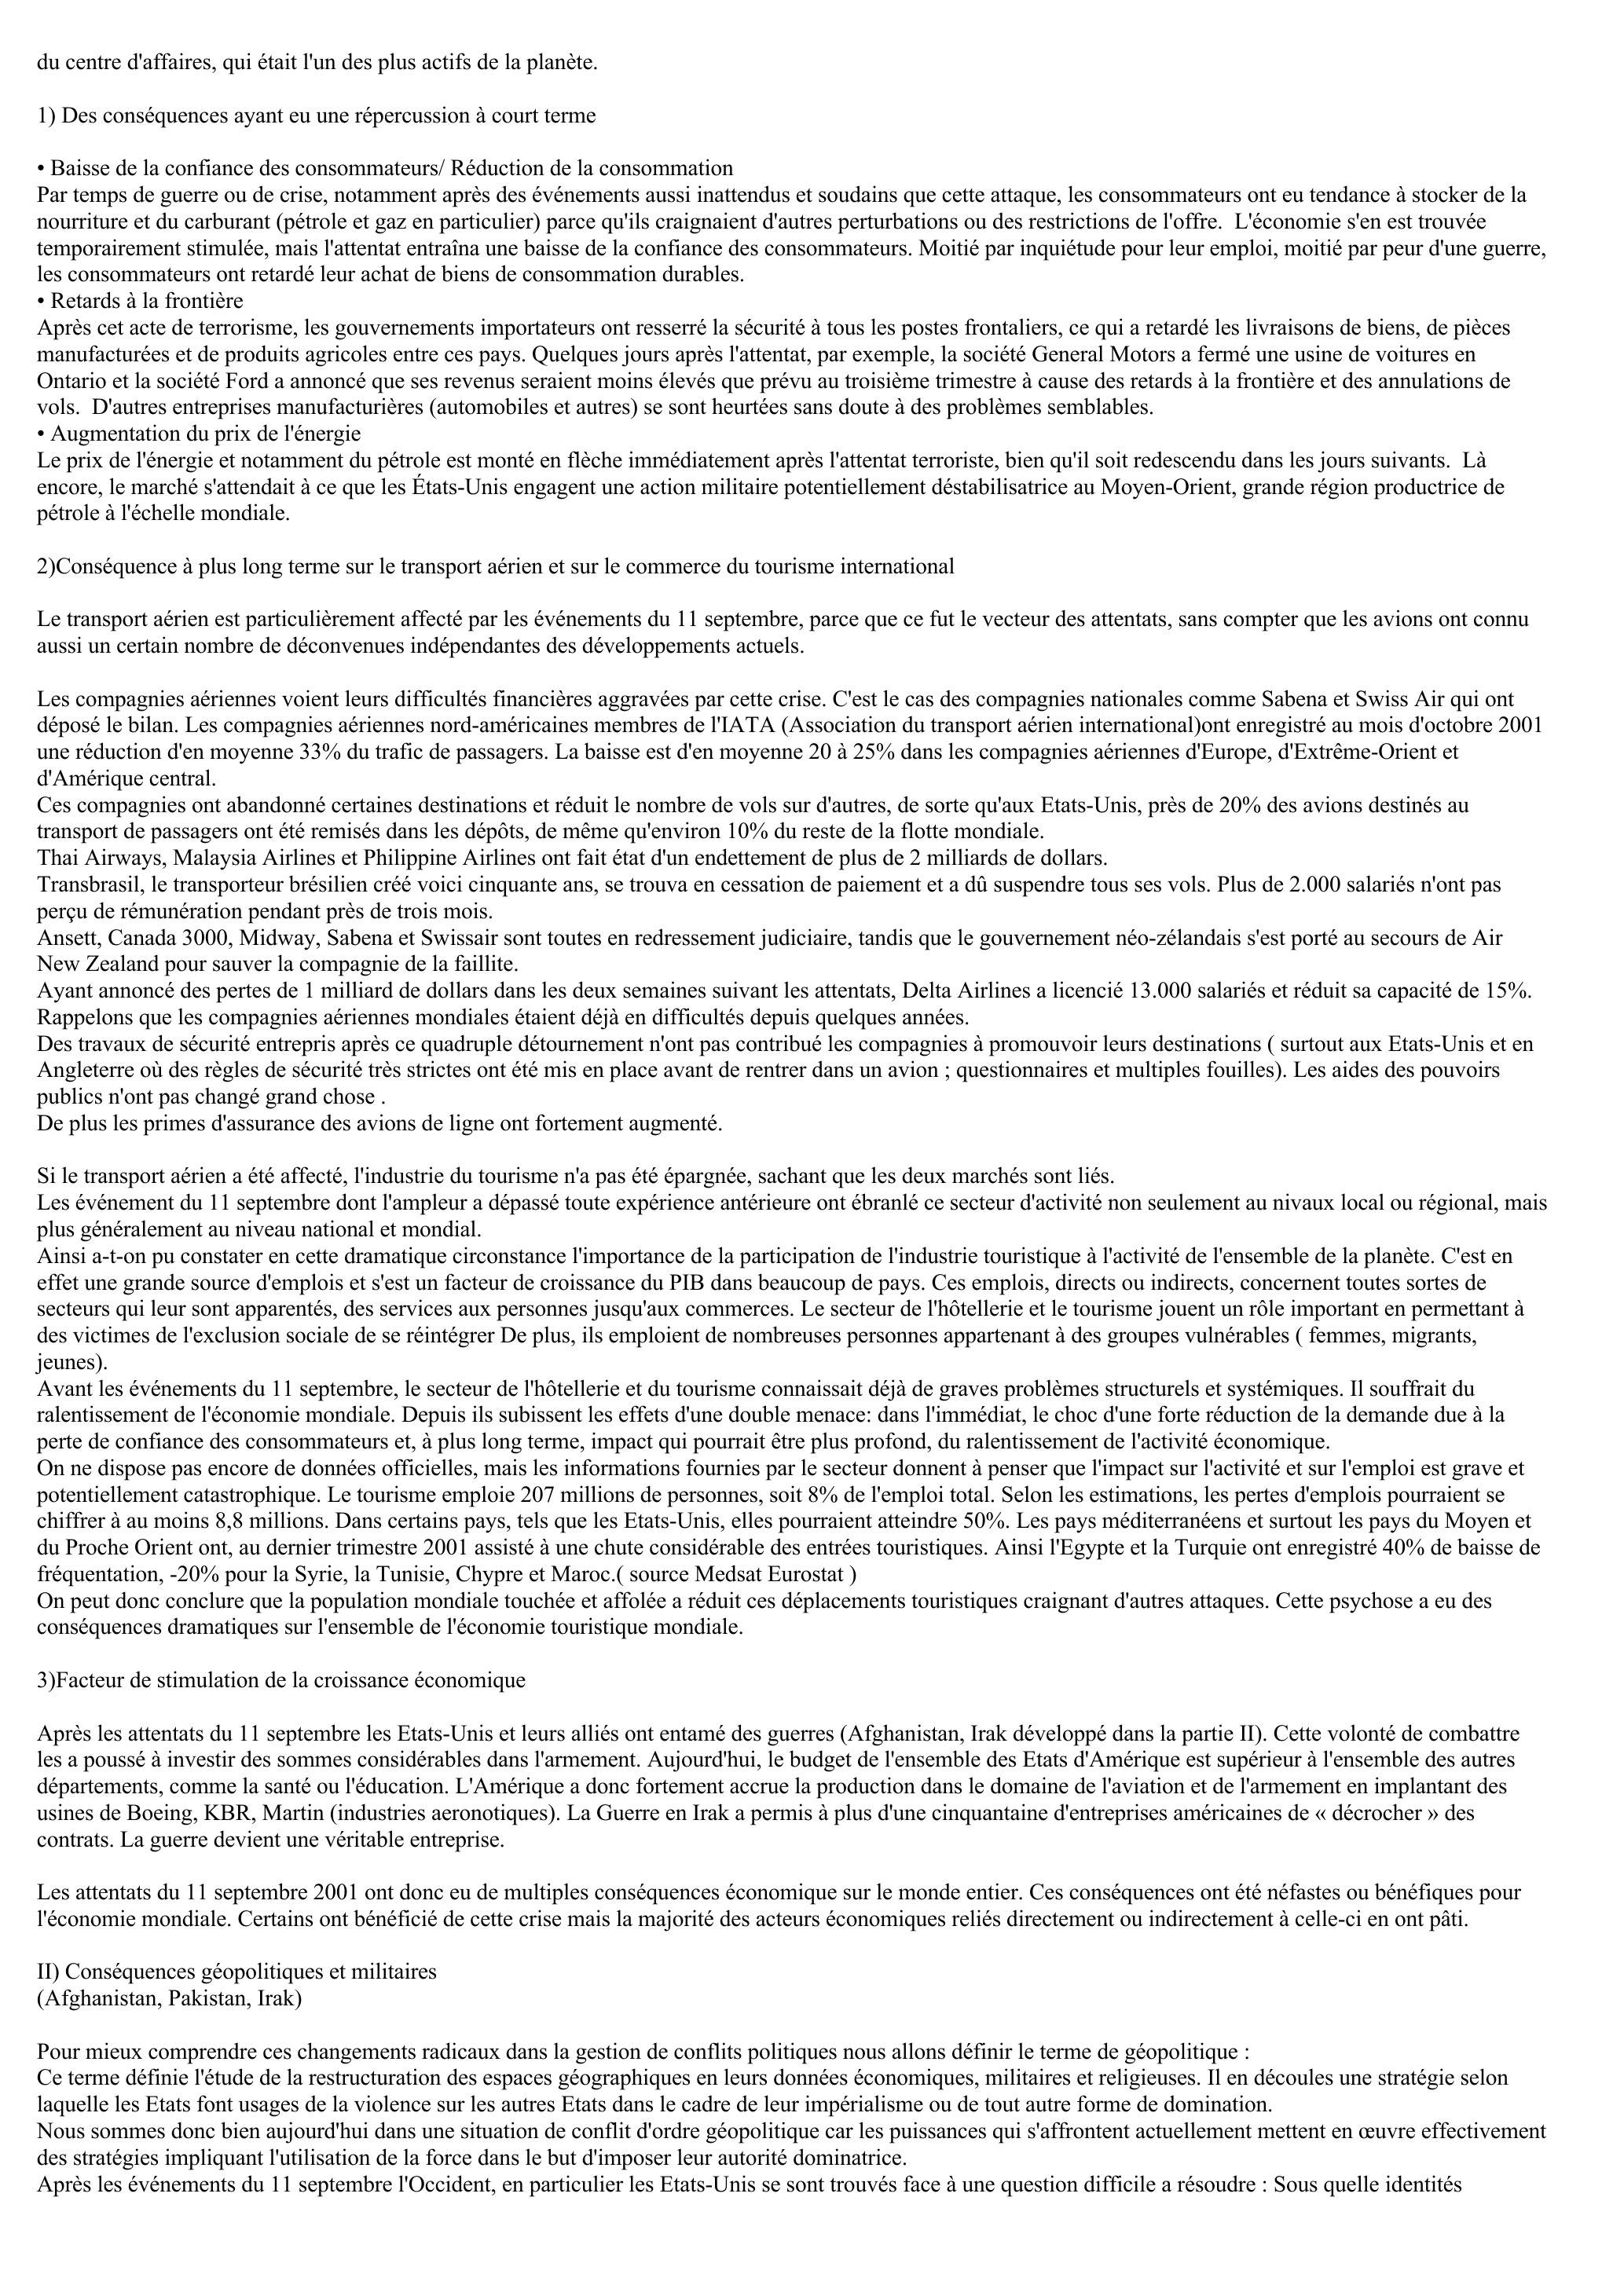 Prévisualisation du document TRAVAUX PERSONNELS ENCADRES : Les conséquences économiques et géopolitiques après les attentats du 11 septembre 2001 (TPE)